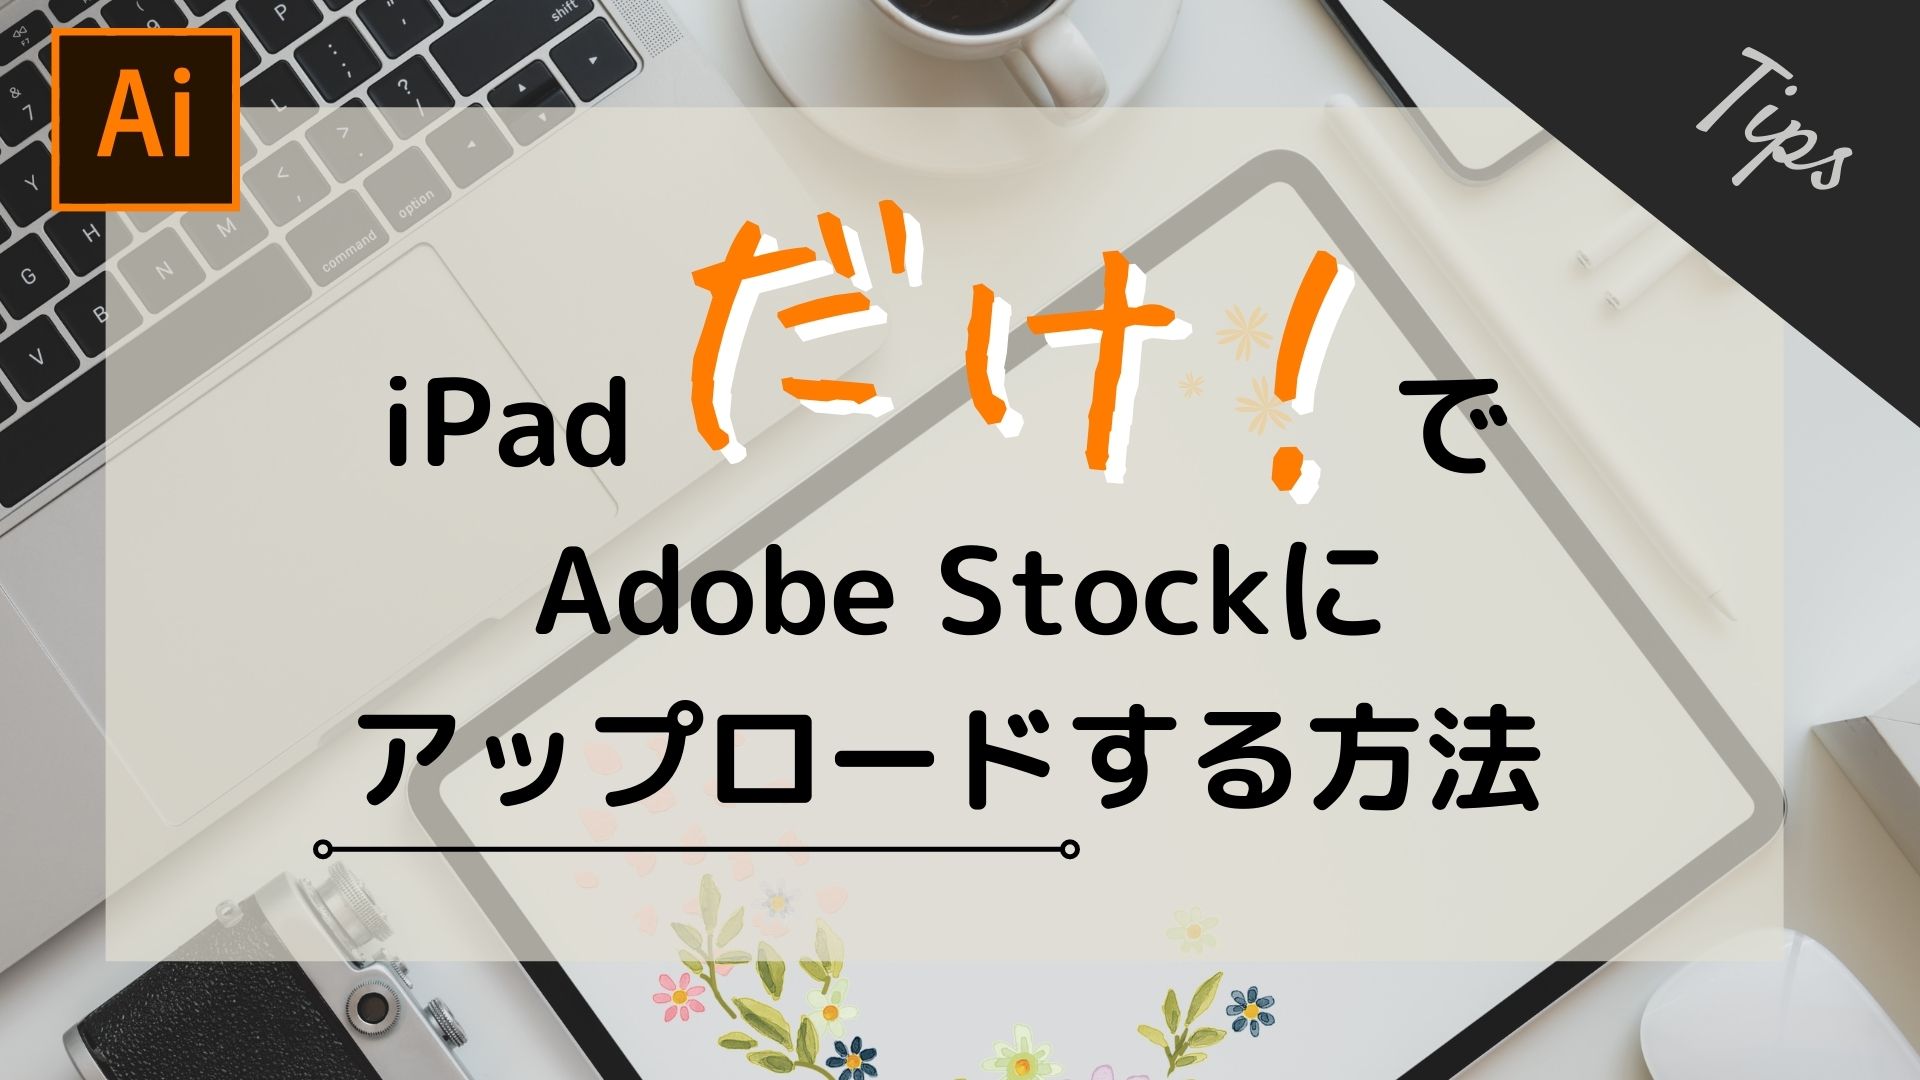 iPadだけでAdobe Stock にベクターデータをアップロードする方法